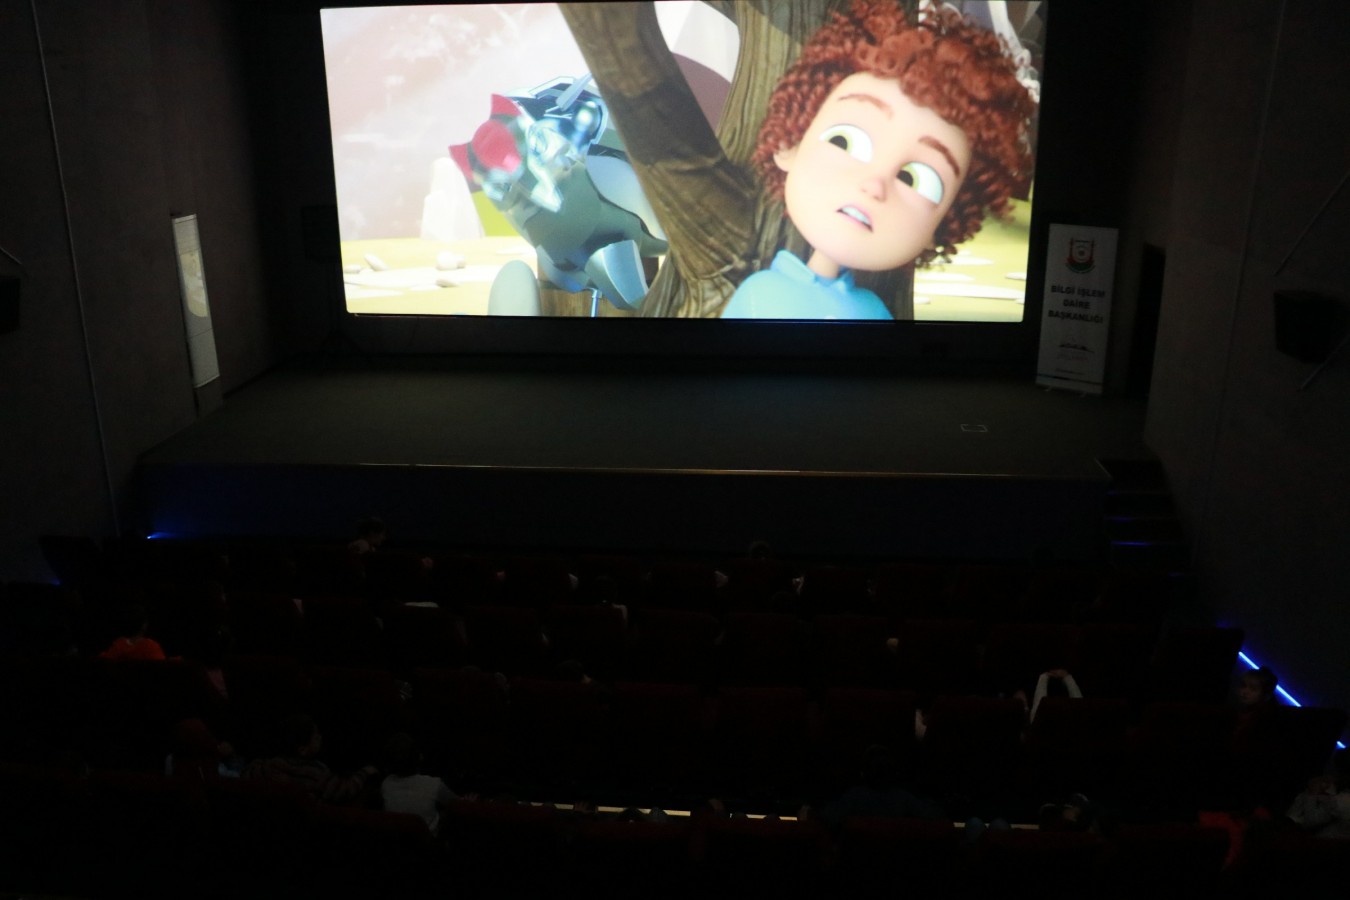 Köy okulundan gelen çocuklar sinemayla tanıştı